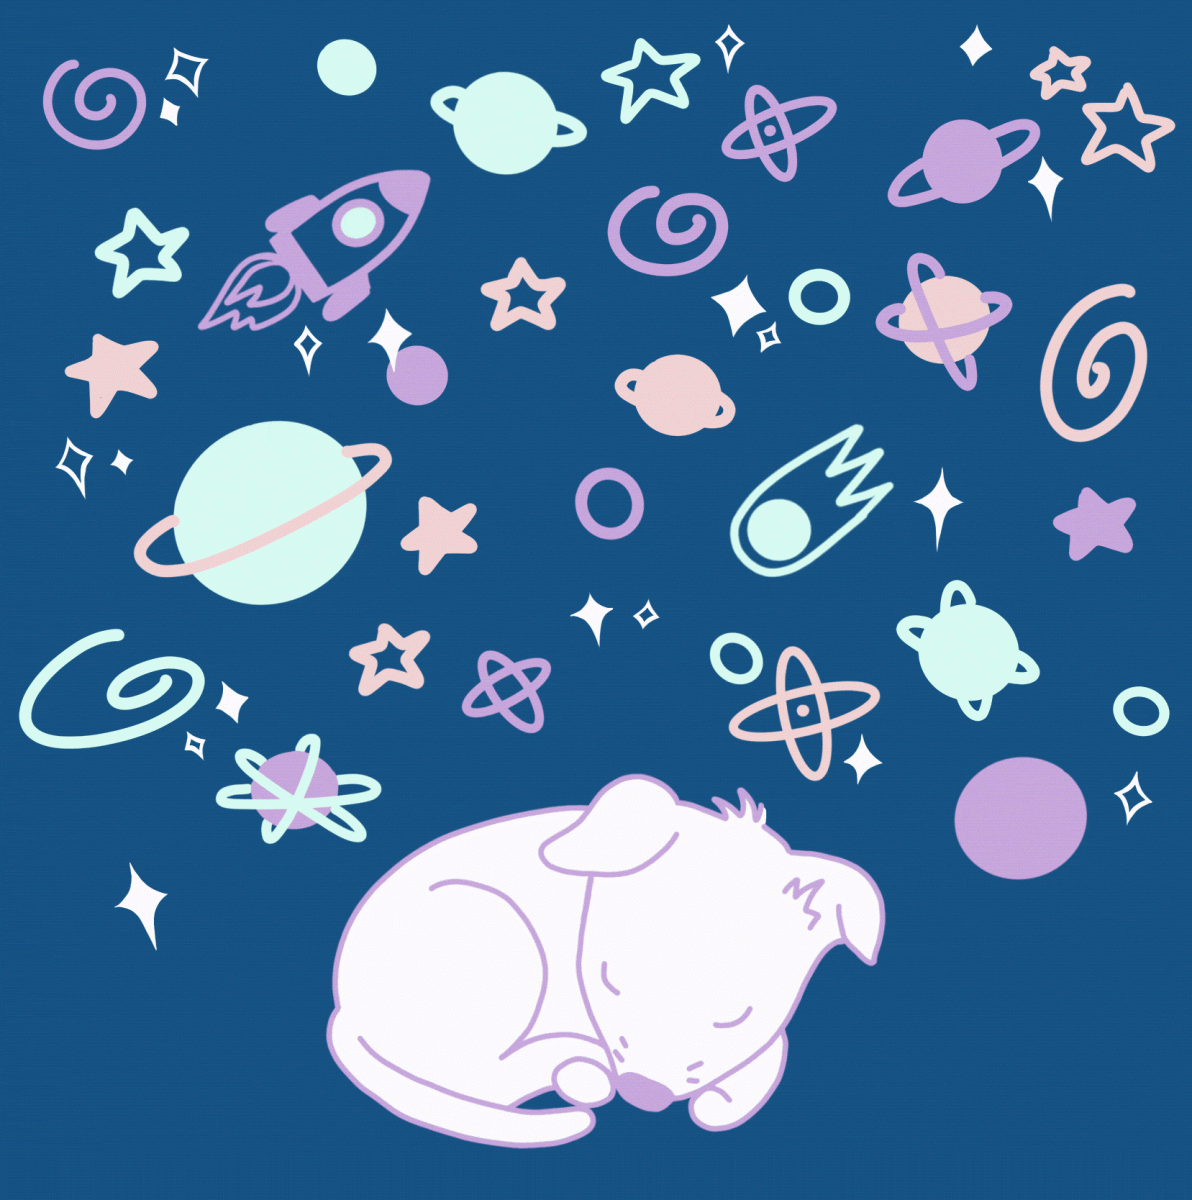 Space Dog Dreams GIF